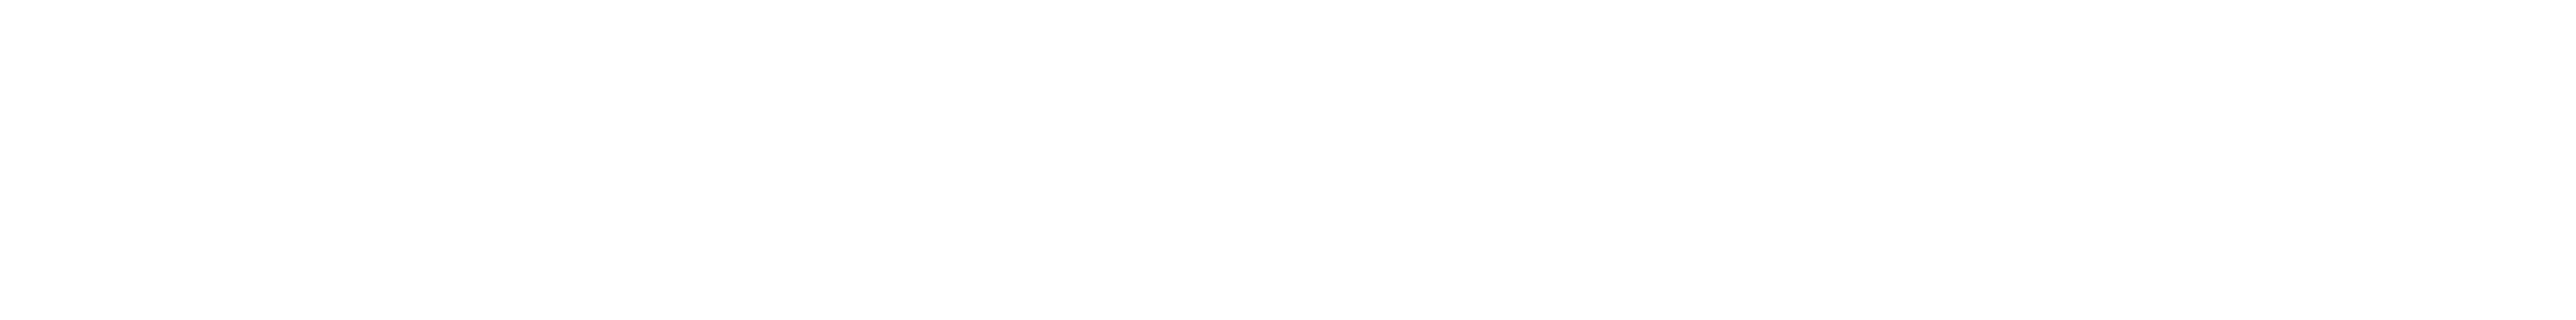 Online Marketing Magazin Logo Weiß